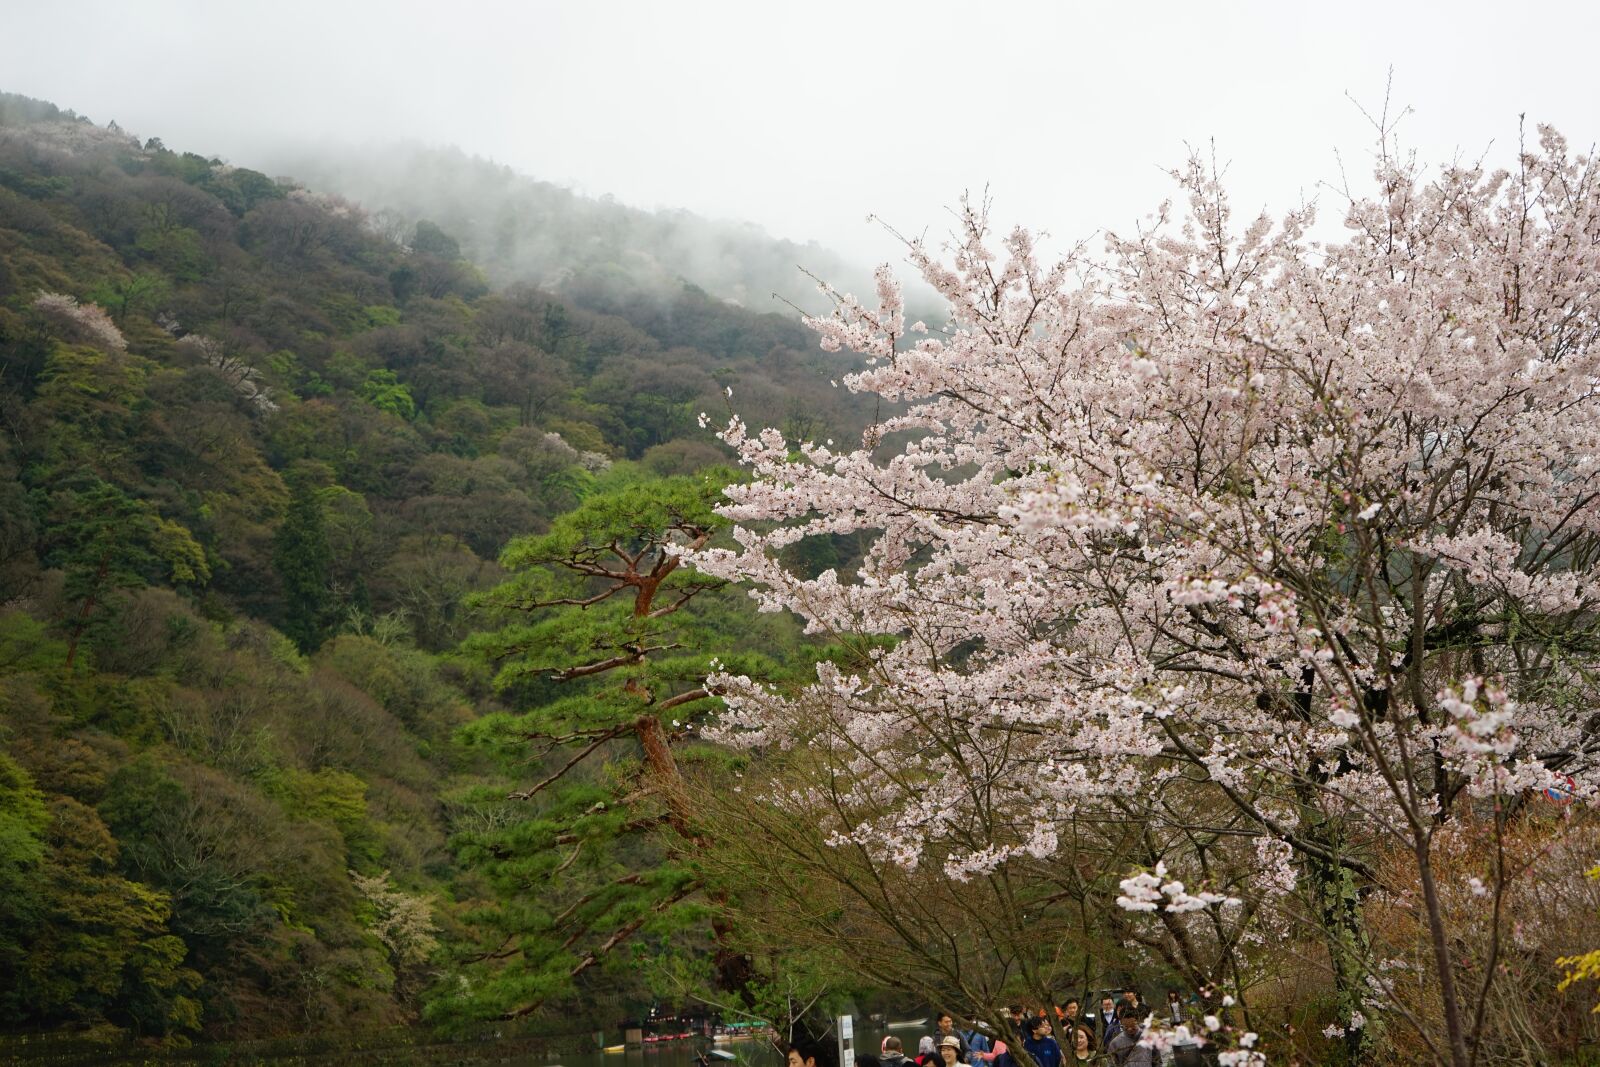 Sony a7 + Sony FE 28-70mm F3.5-5.6 OSS sample photo. Japan, blossom, sakura photography